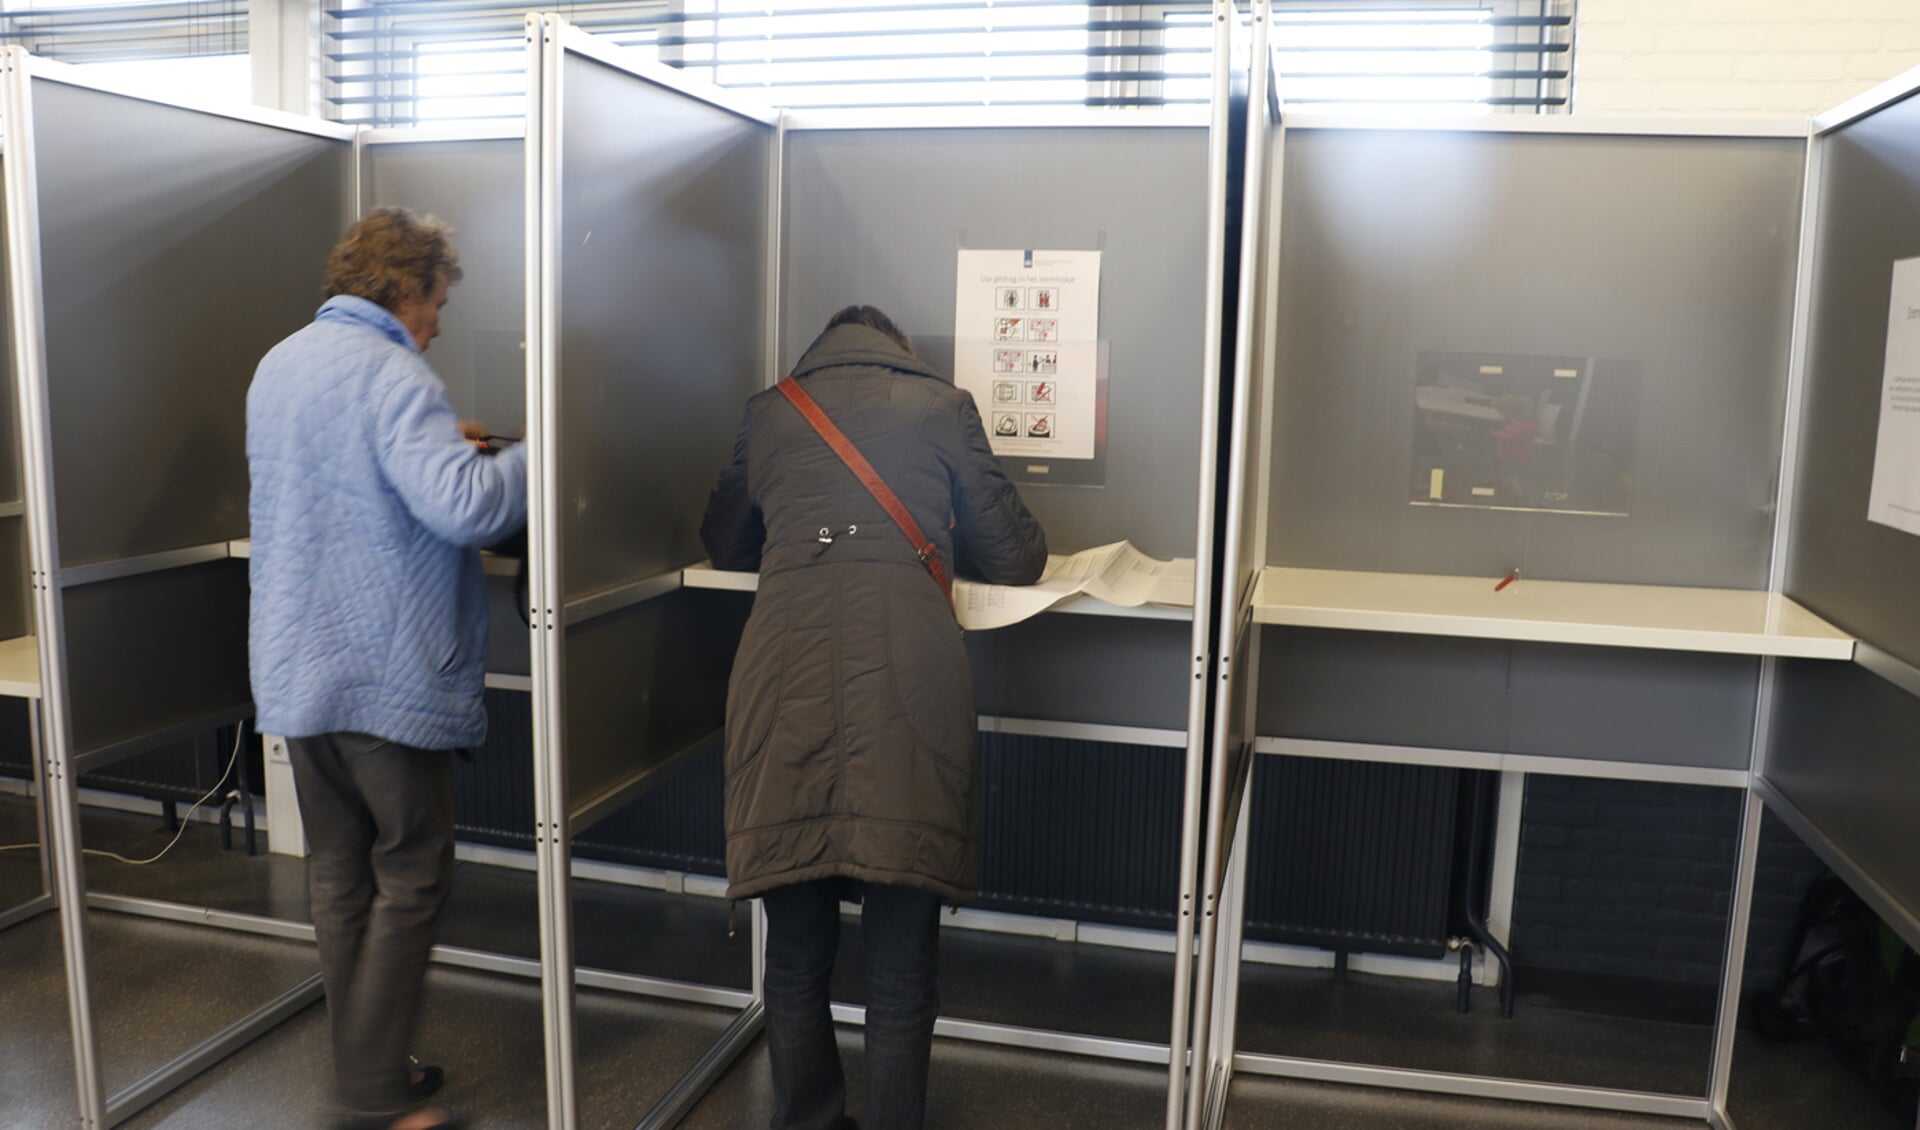 De Tweede Kamerverkiezingen in Breda, woensdag 15 maart 2017.